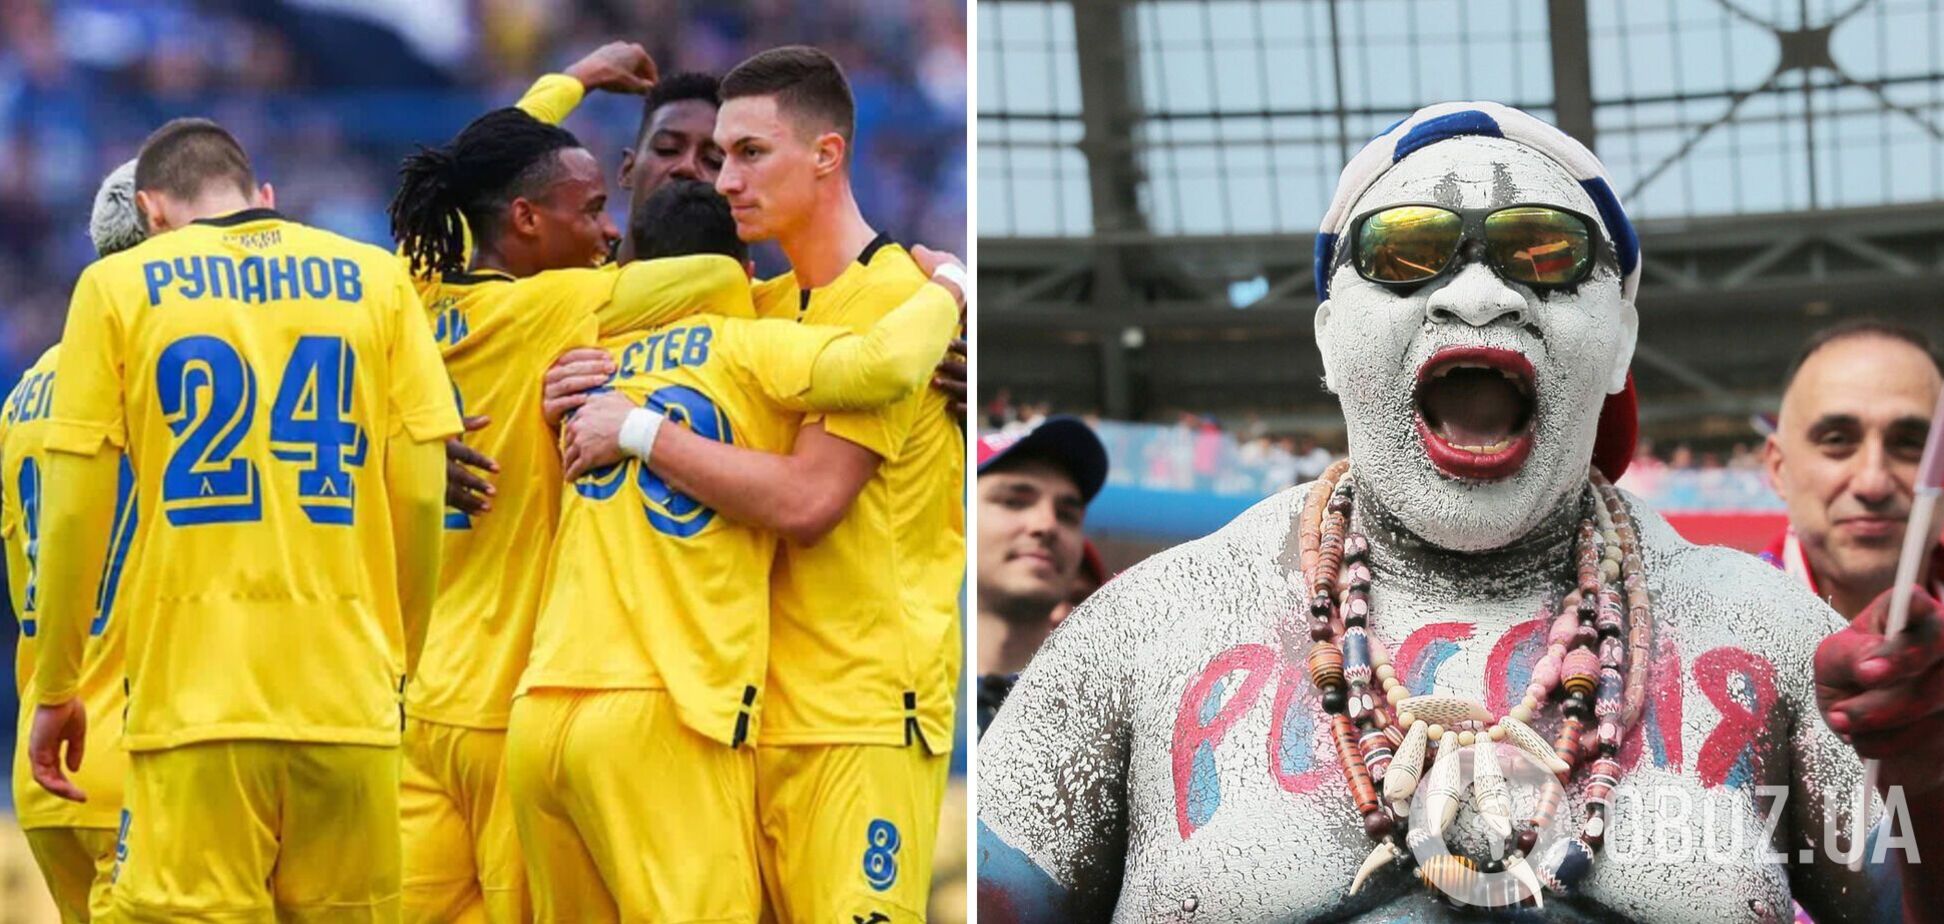 'Ми їх рятували. Псини': росіяни розлютилися через плани болгарського клубу зіграти в кольорах України